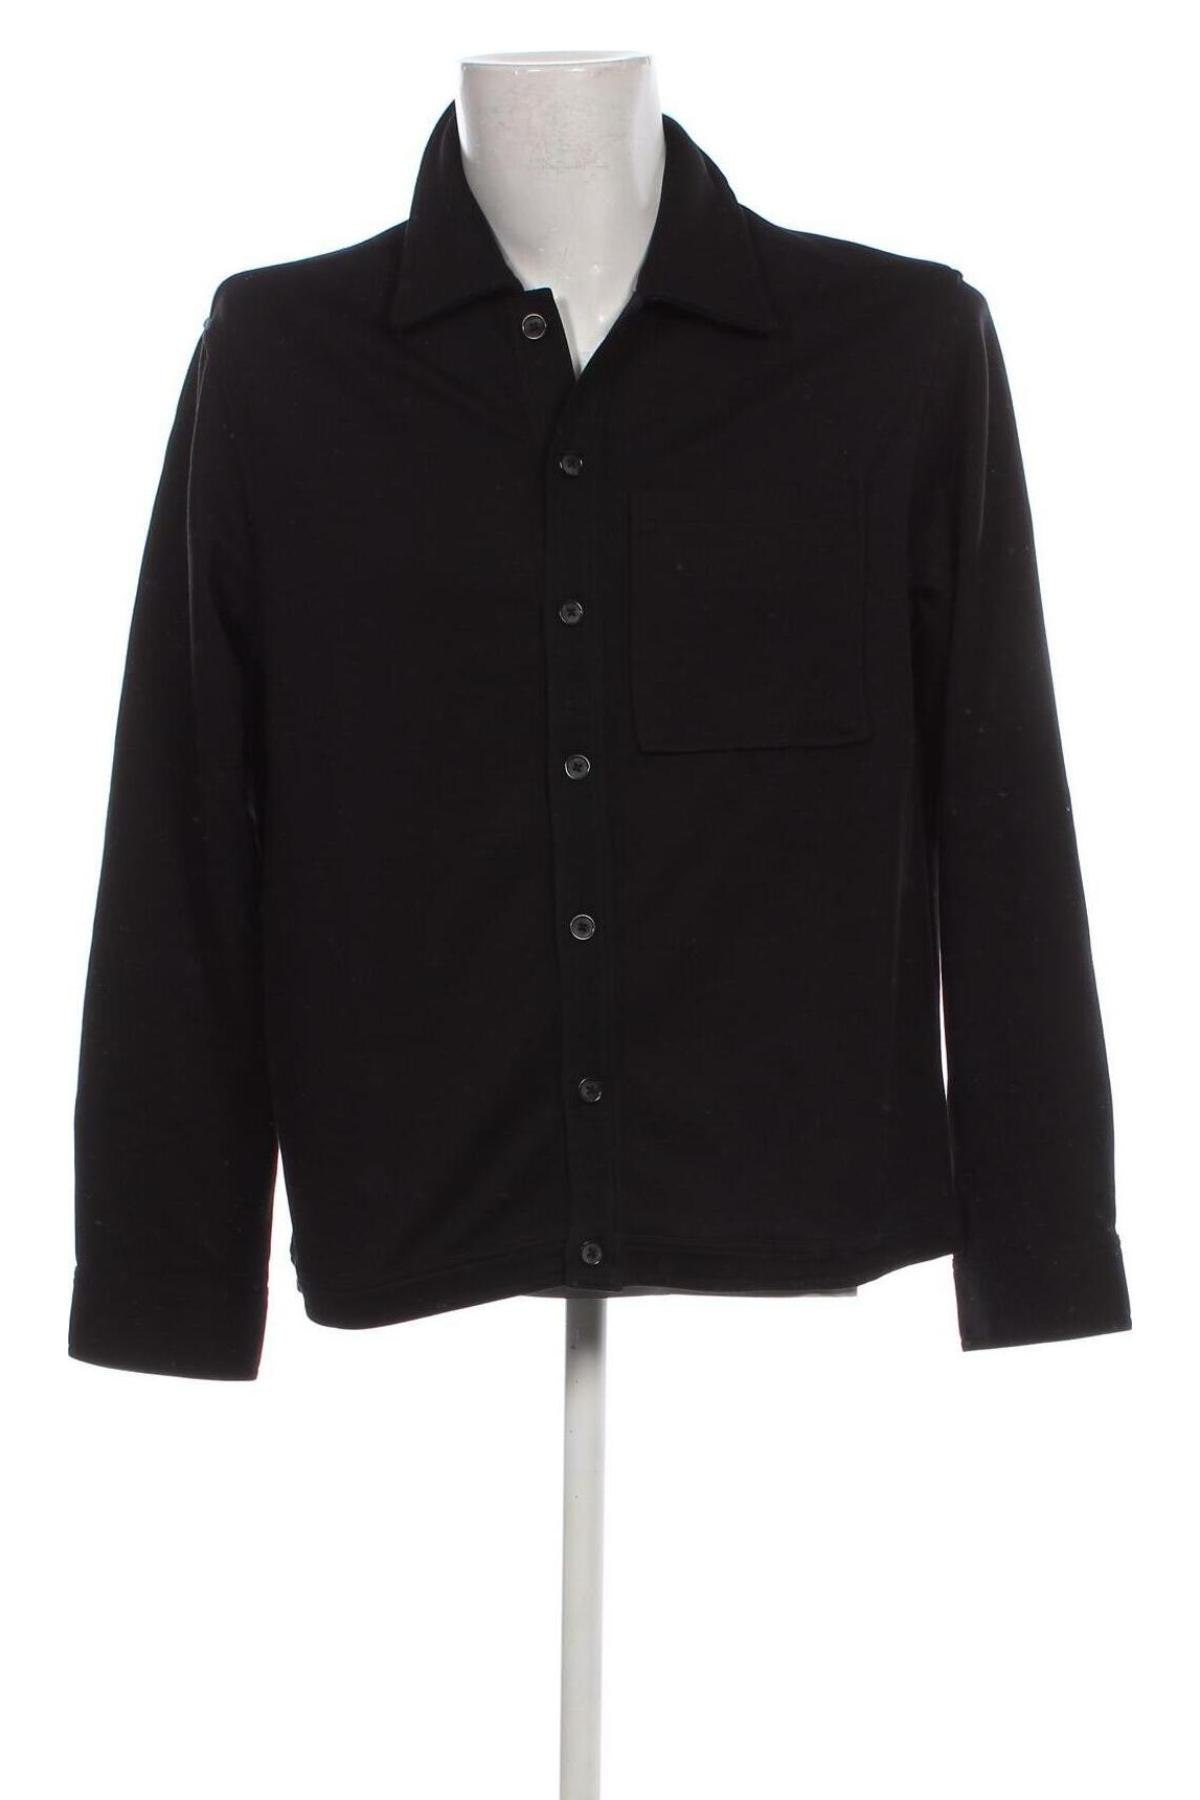 Ανδρικό πουκάμισο Dan Fox X About You, Μέγεθος M, Χρώμα Μαύρο, Τιμή 21,83 €